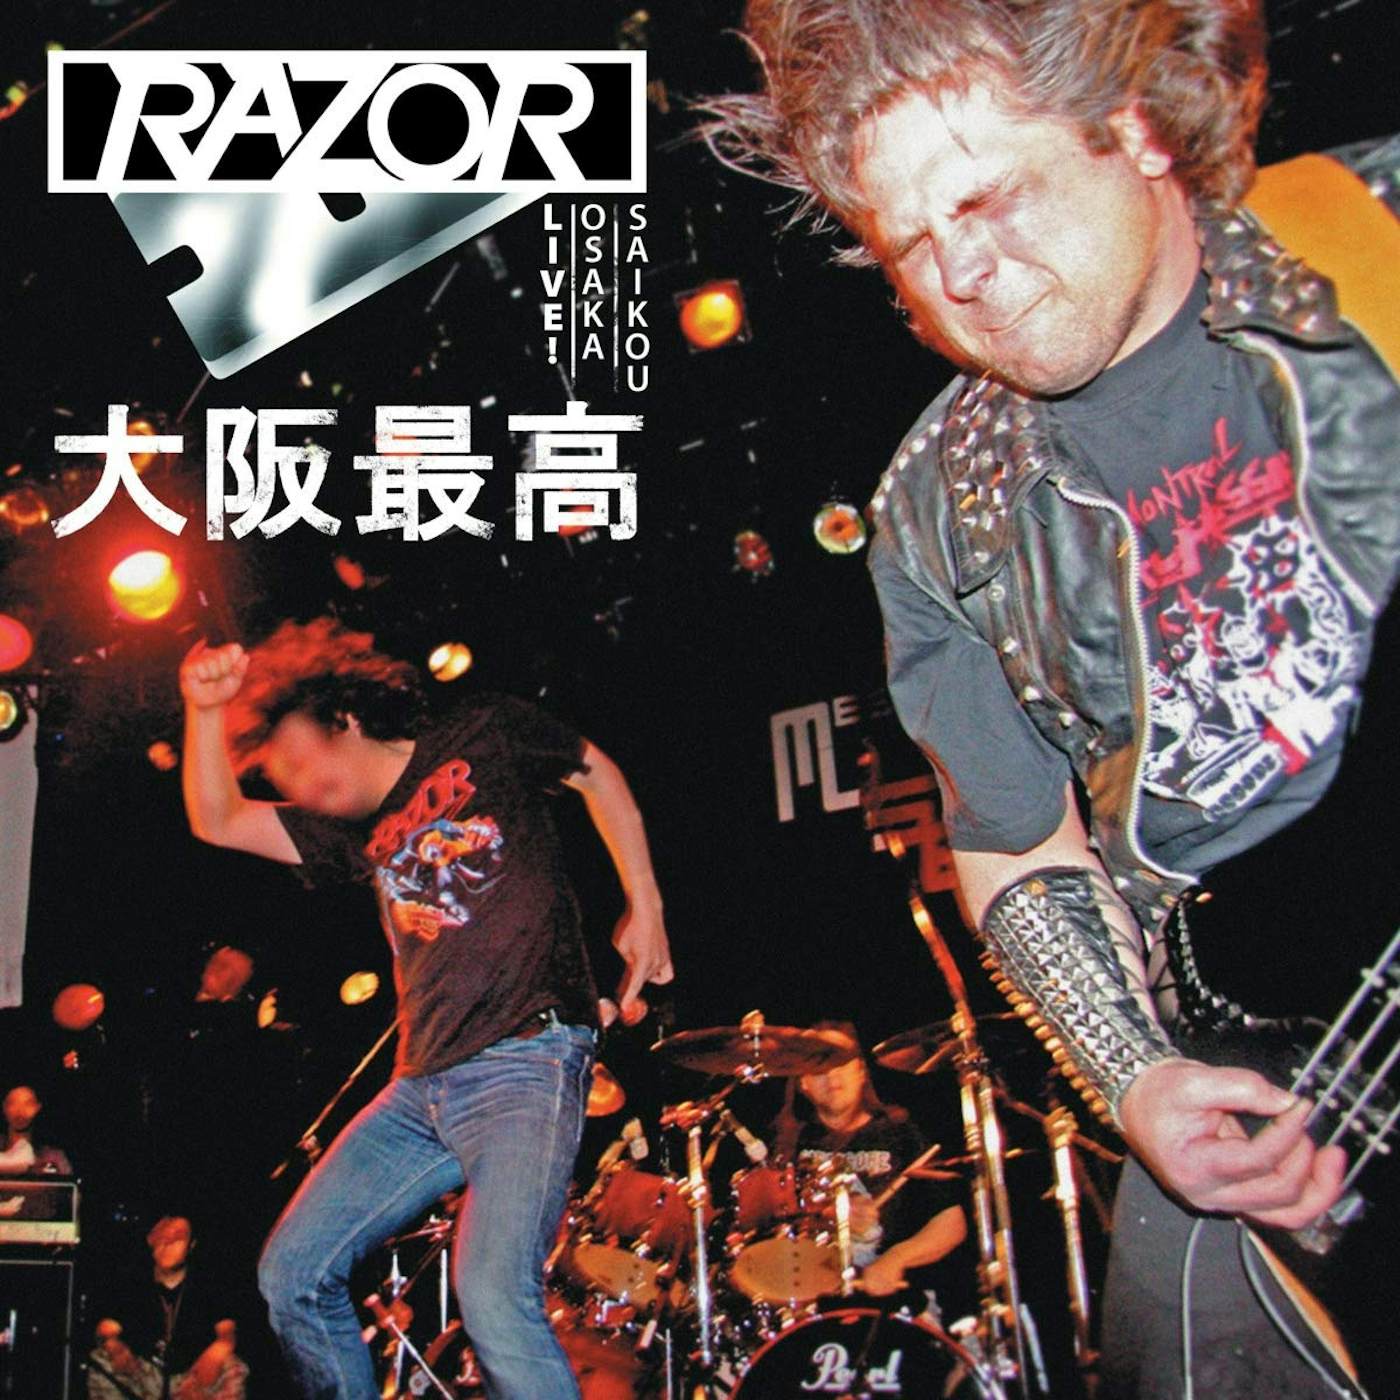 Razor LIVE! OSAKA SAIKOU 大阪最高 Vinyl Record